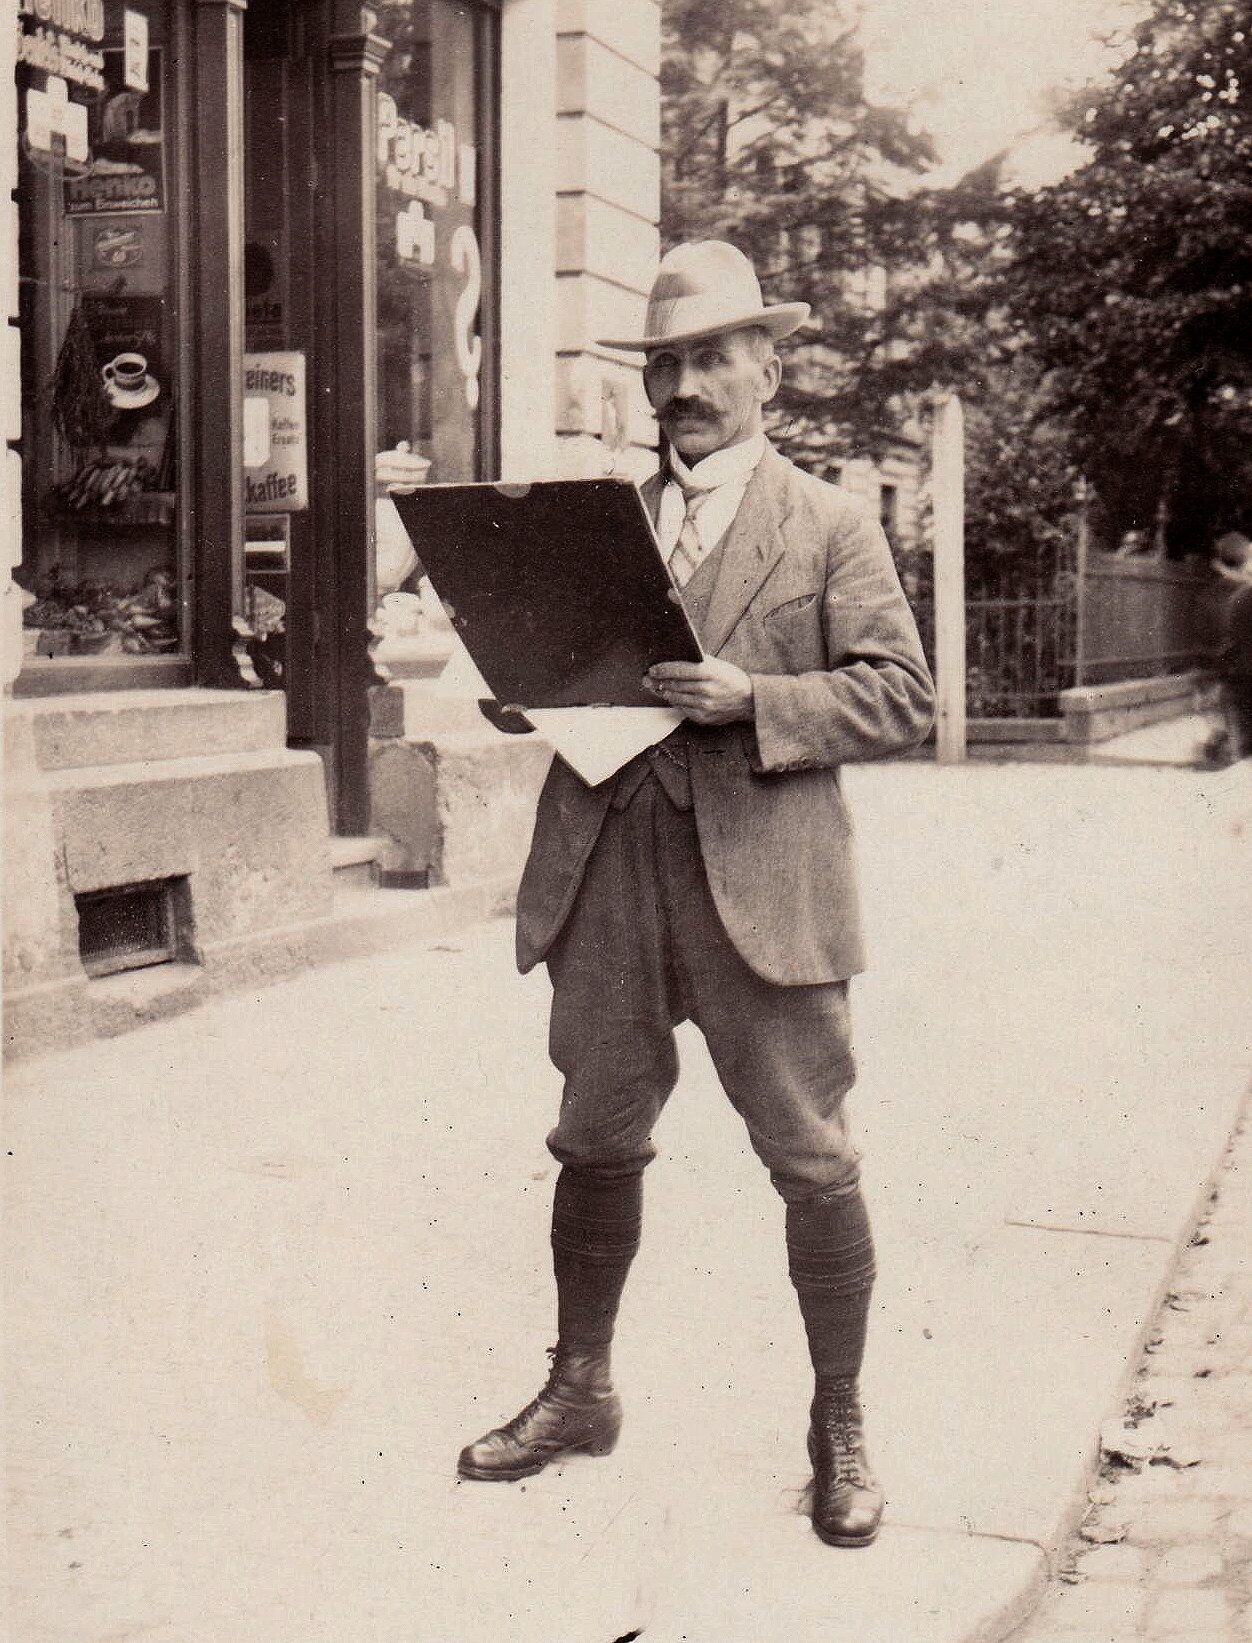 Karl Stanka steht zeichnend auf einem Bürgersteig vor einem Geschäft. In der Hand hält er ein Zeichenbrett. Er trägt einen Anzug, Hut und Stiefel.